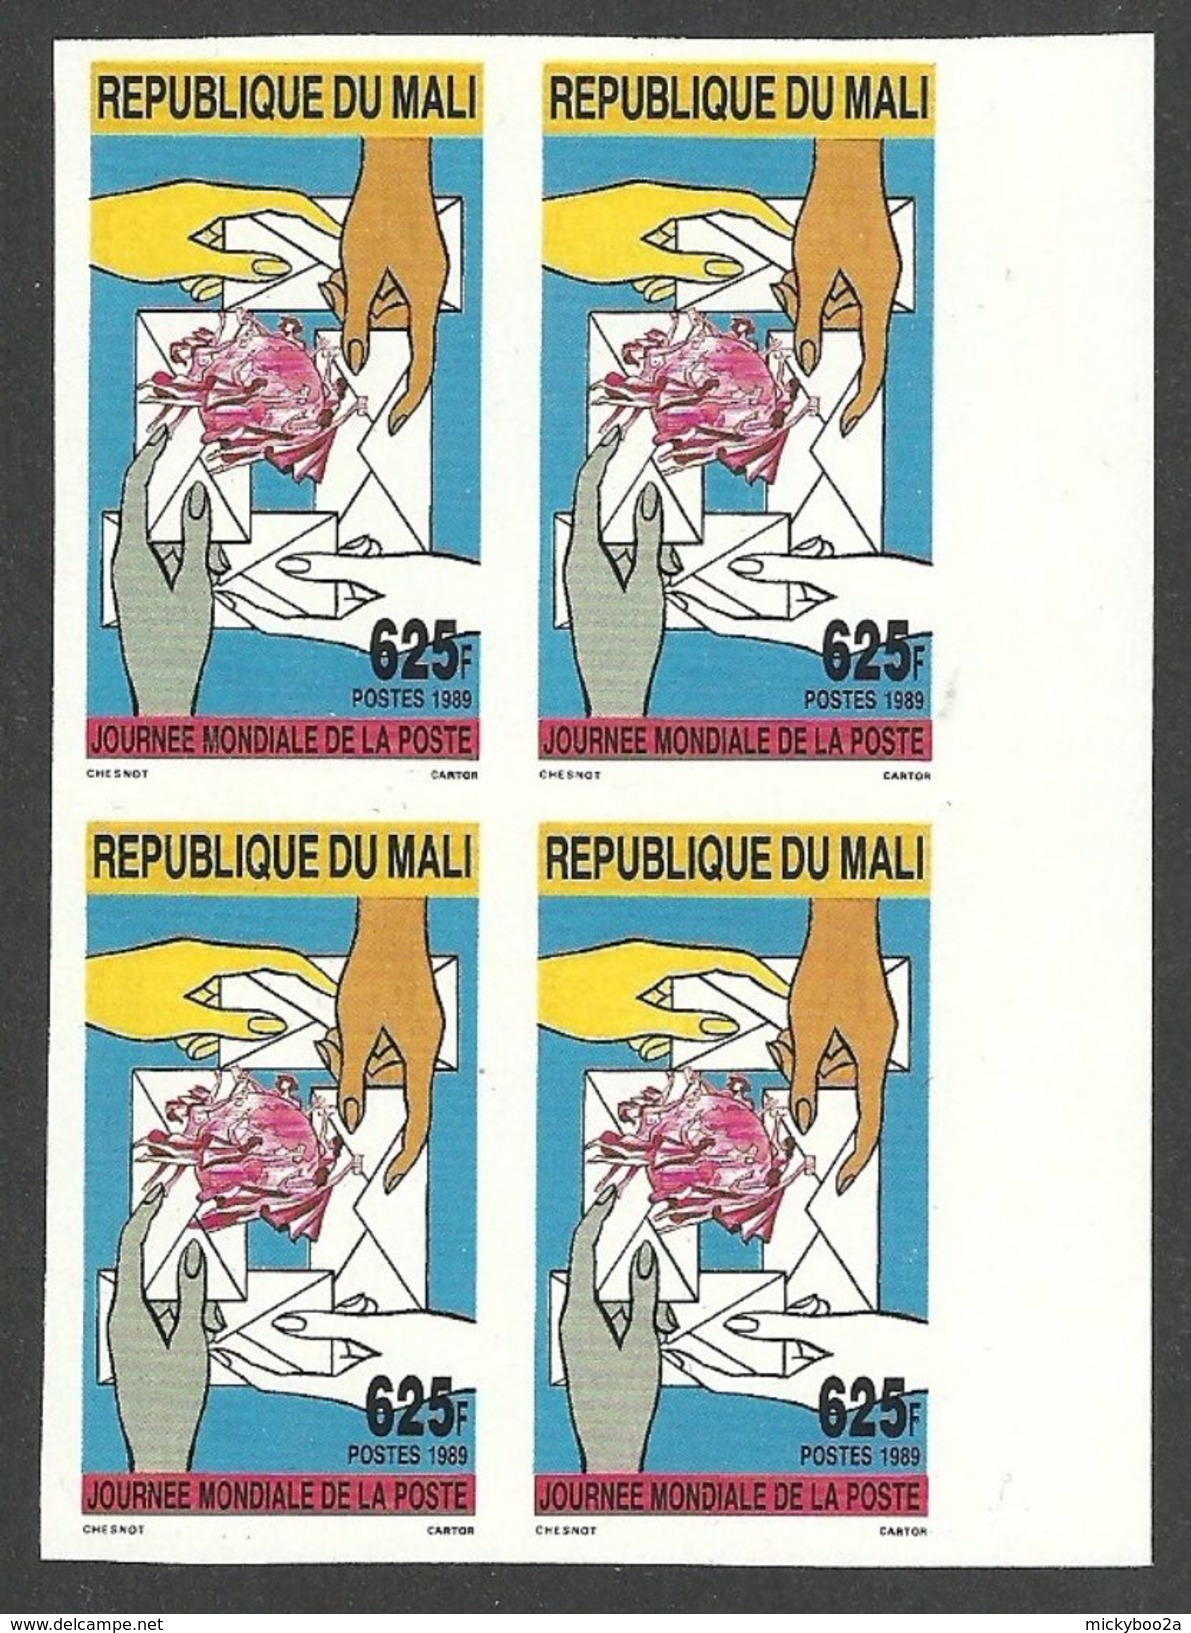 MALI 1989 WORLD POST DAY UPU HANDS IMPERF SET BLOCK OF 4 MNH - Mali (1959-...)